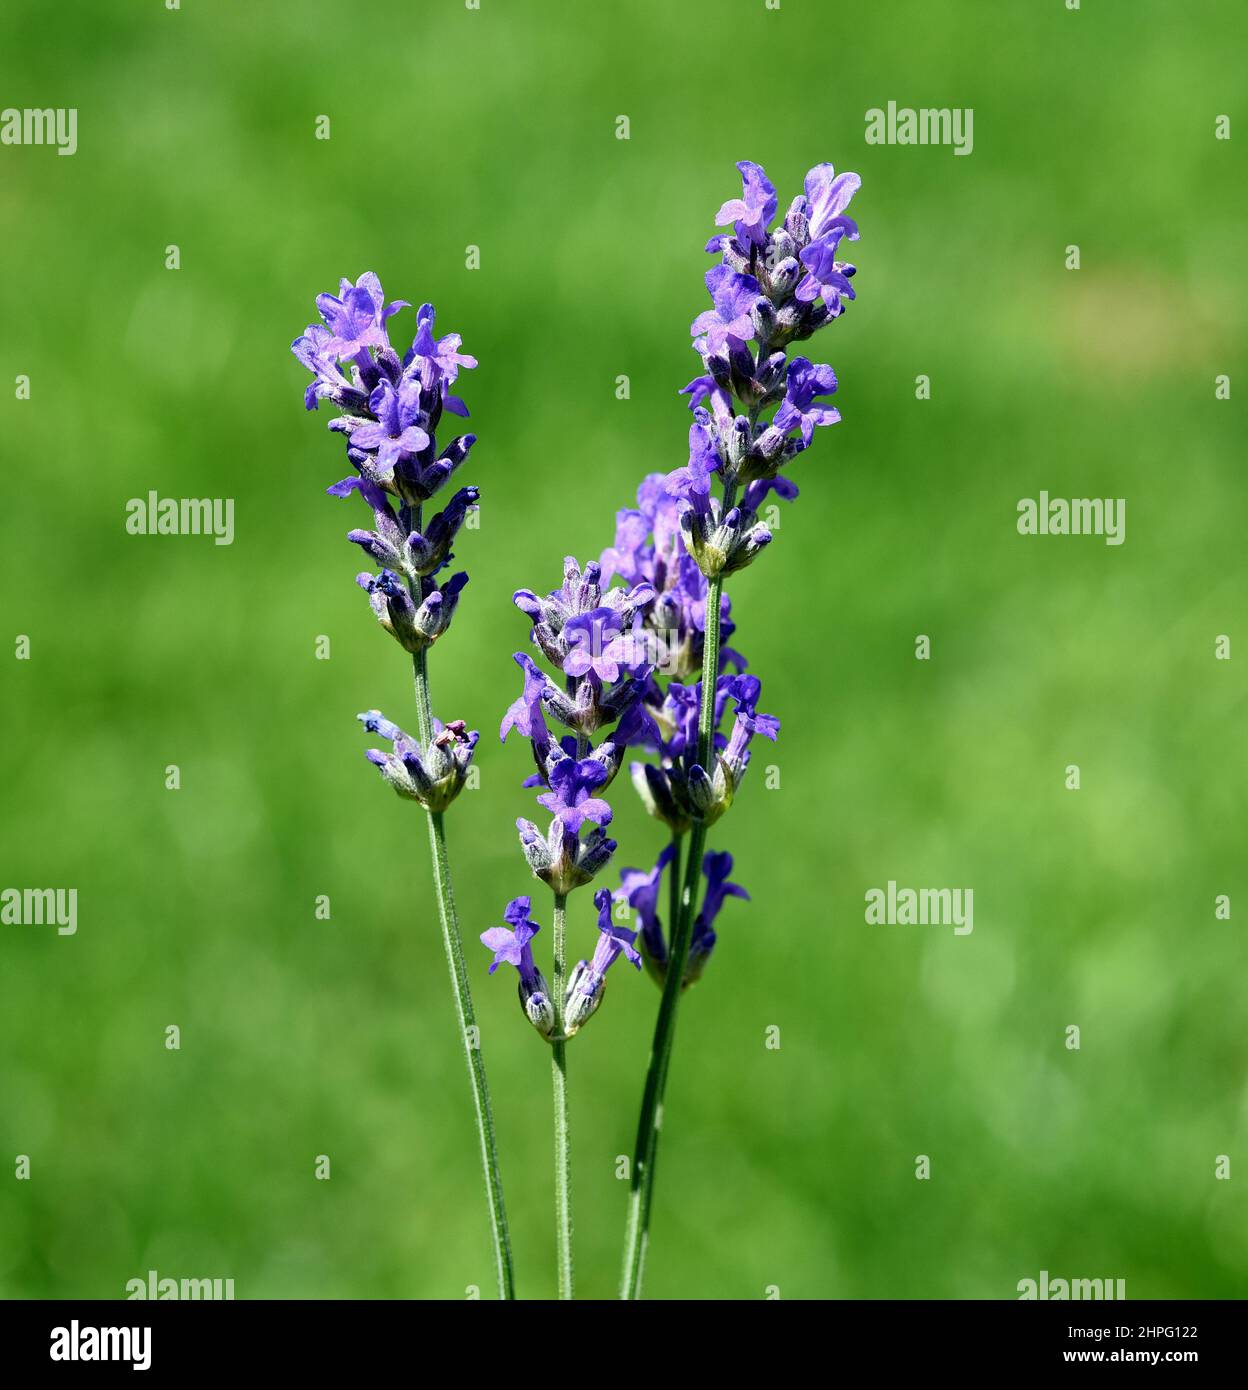 Lavendel, lavendel officinalis ist eine wichtige Heilpflanze und eine Duftpflanze mit blauen Blueten und wird in der Medizin verwendet. Lavendel, lav Stockfoto